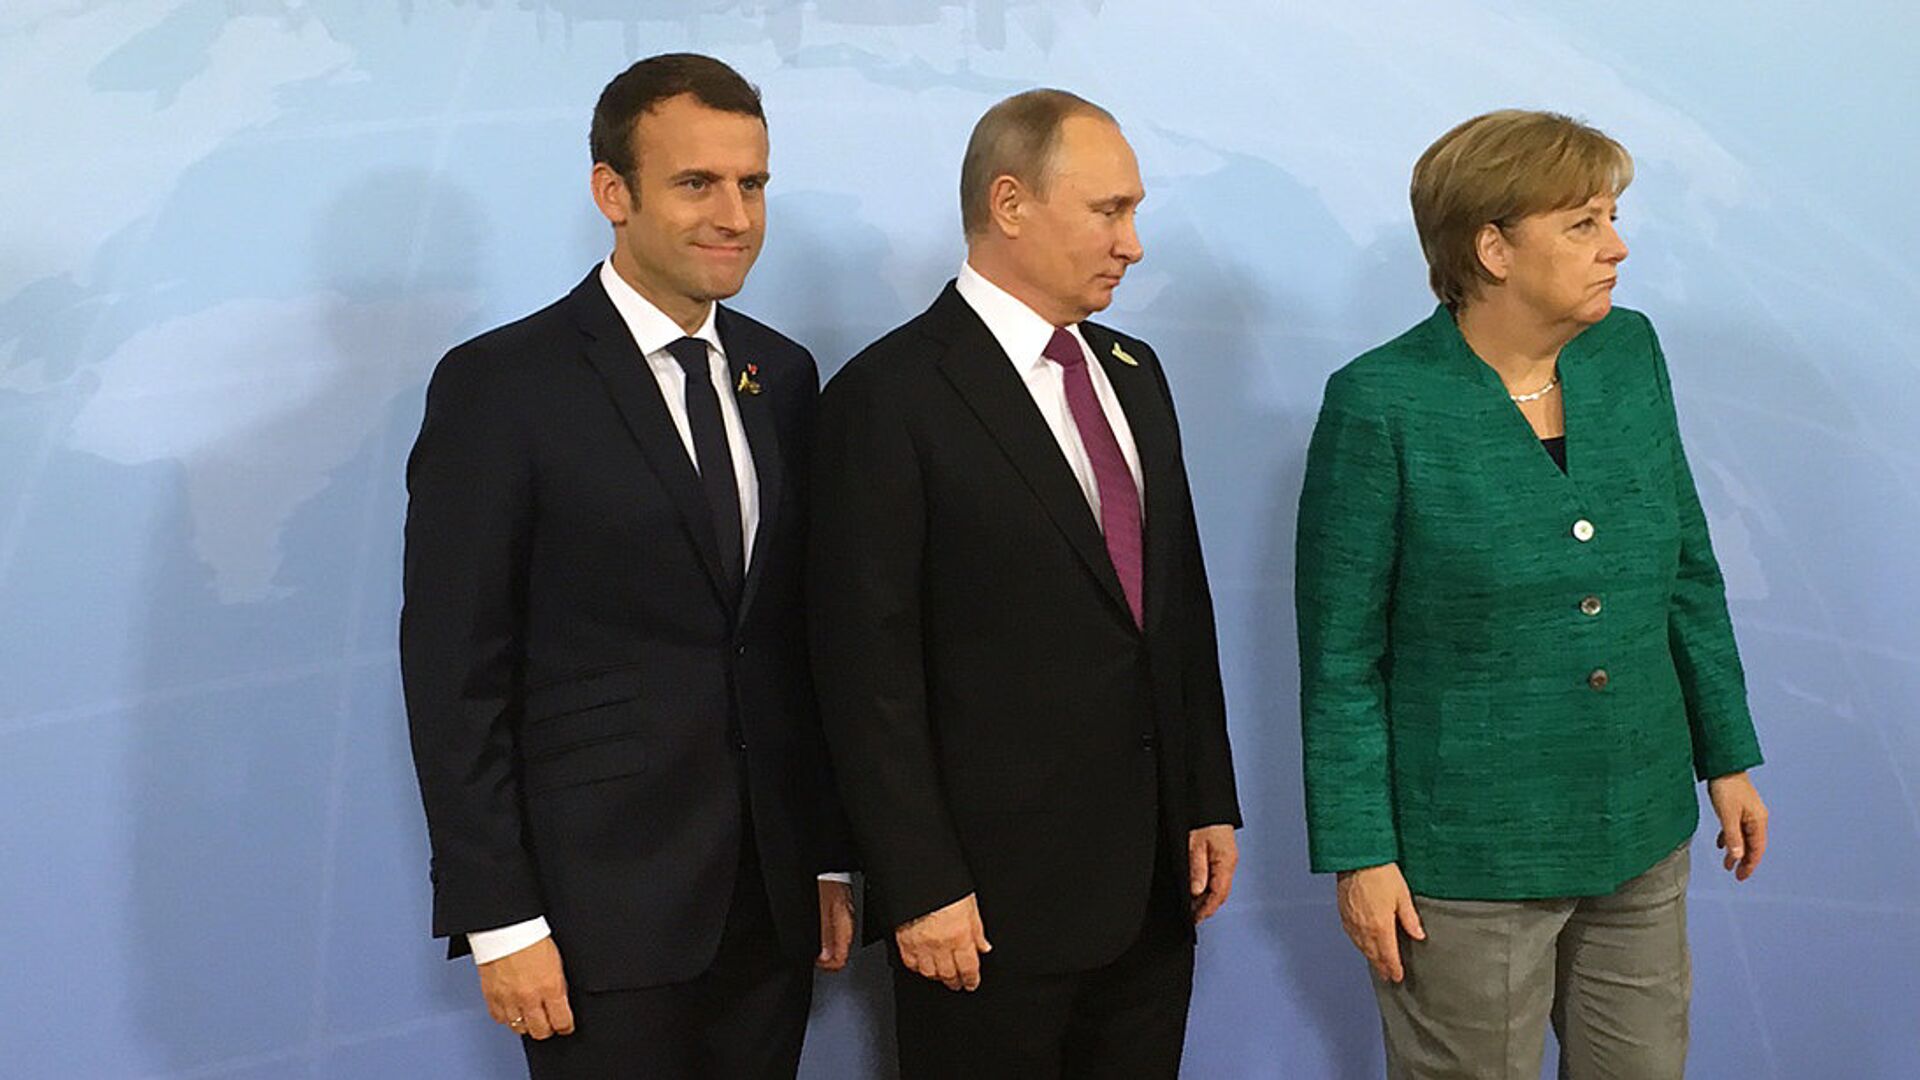 Президент России Владимир Путин, канцлер ФРГ Ангела Меркель и президент Франции Эммануэль Макрон во время встречи на саммите G20 в Гамбурге. 8 июля 2017 - ИноСМИ, 1920, 02.04.2021